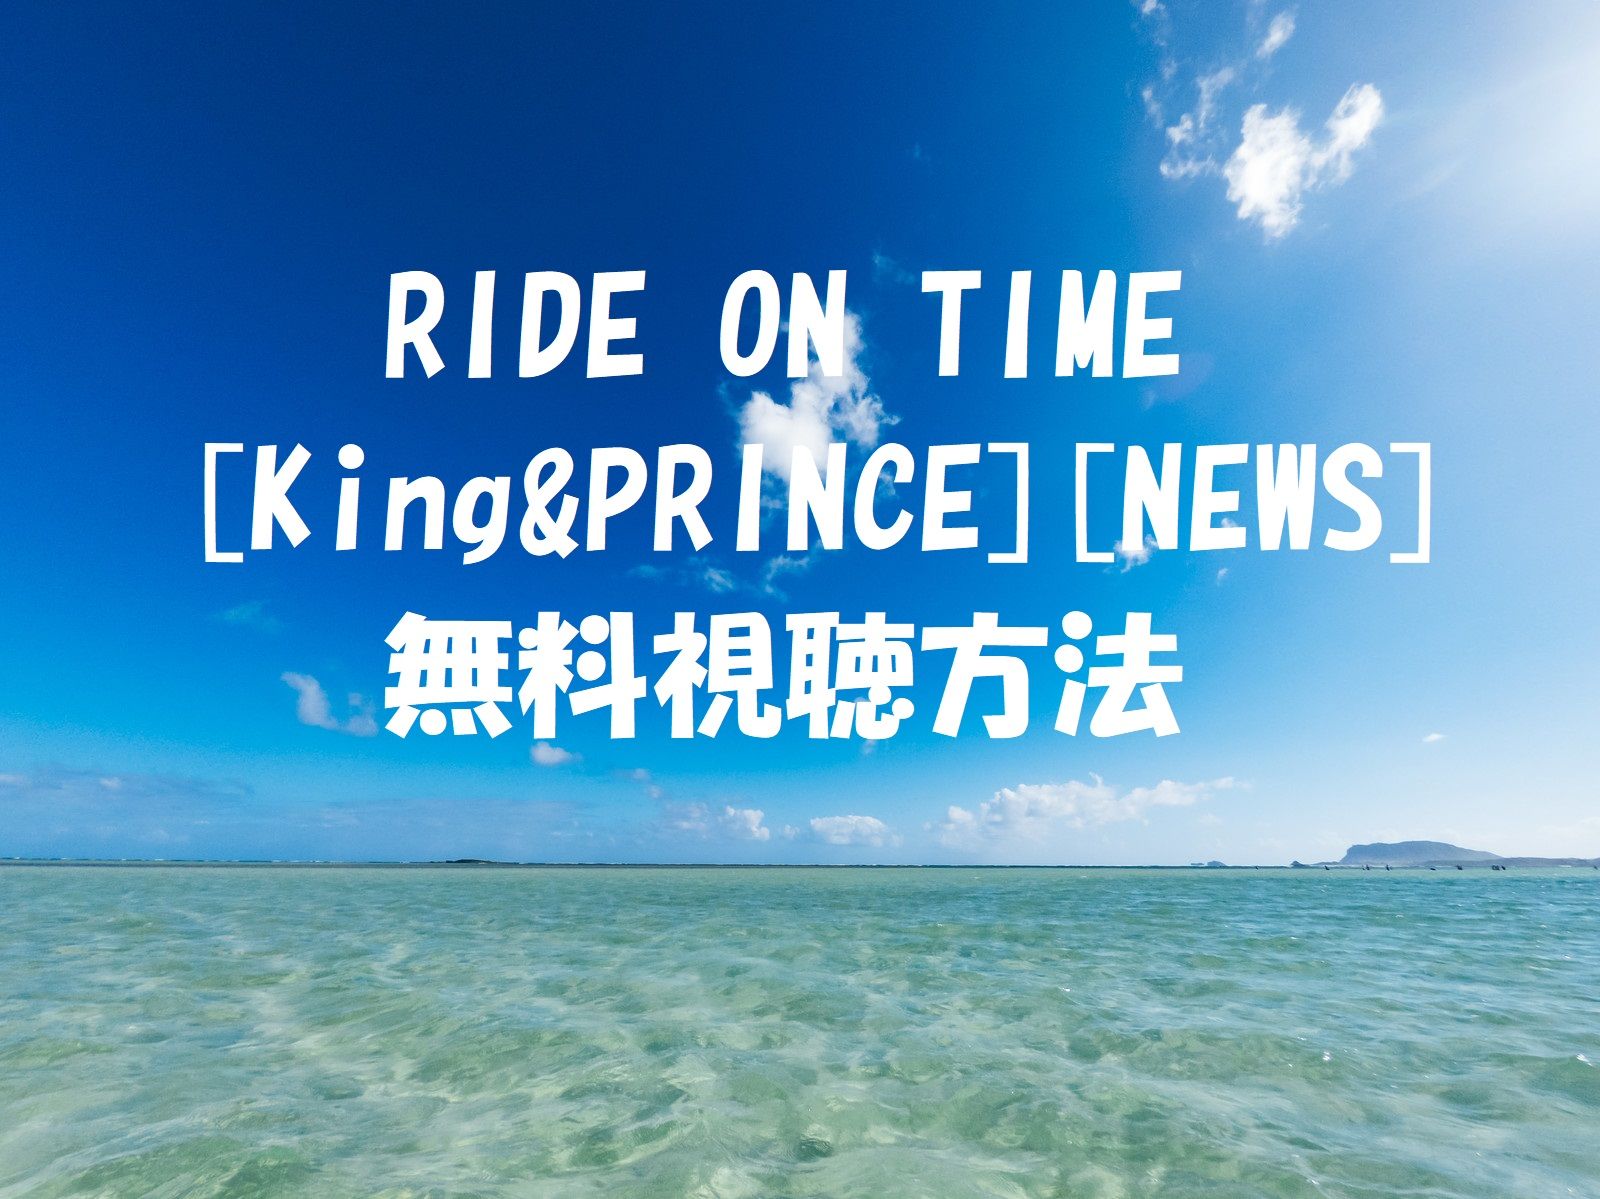 Ride On Timeキンプリnews 動画は無料視聴ok ドキュメンタリーの感想